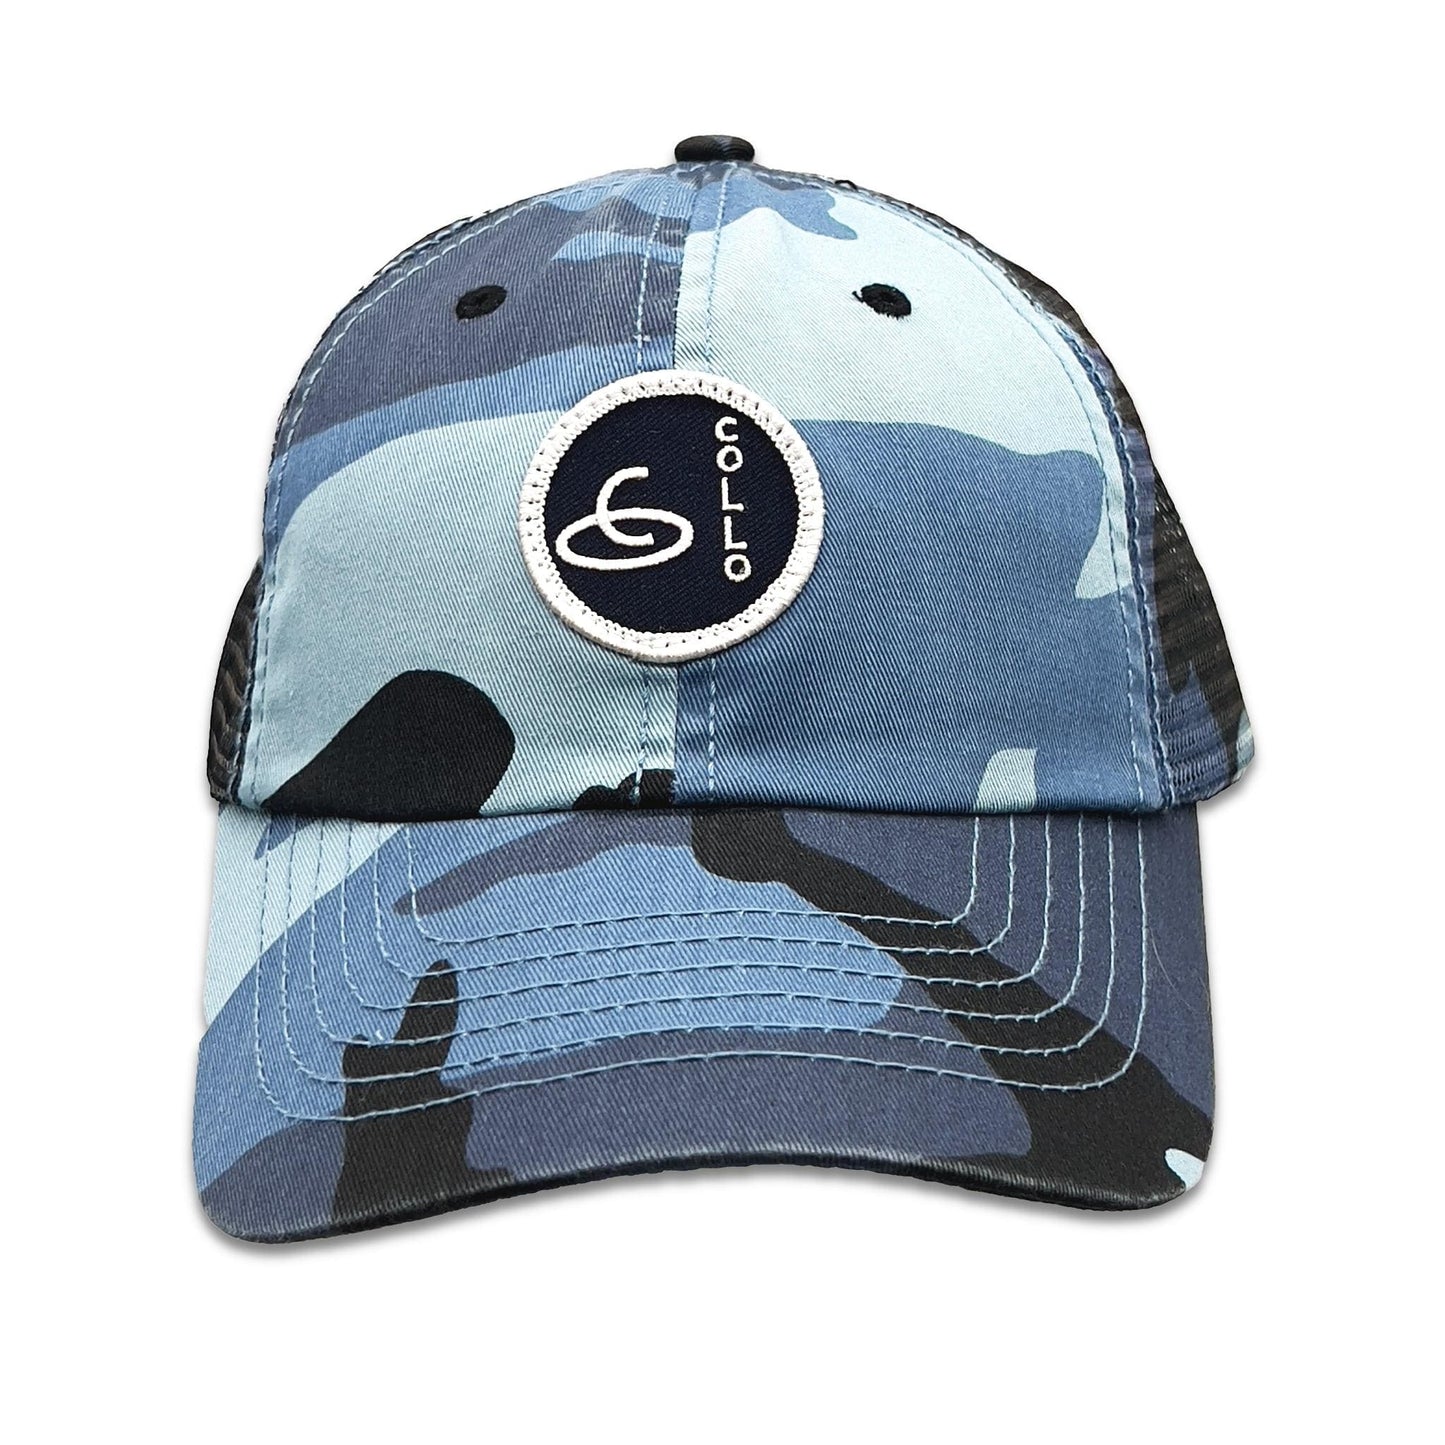 coLLo AppareL Hats Blue-camo / ADJ ADDIE